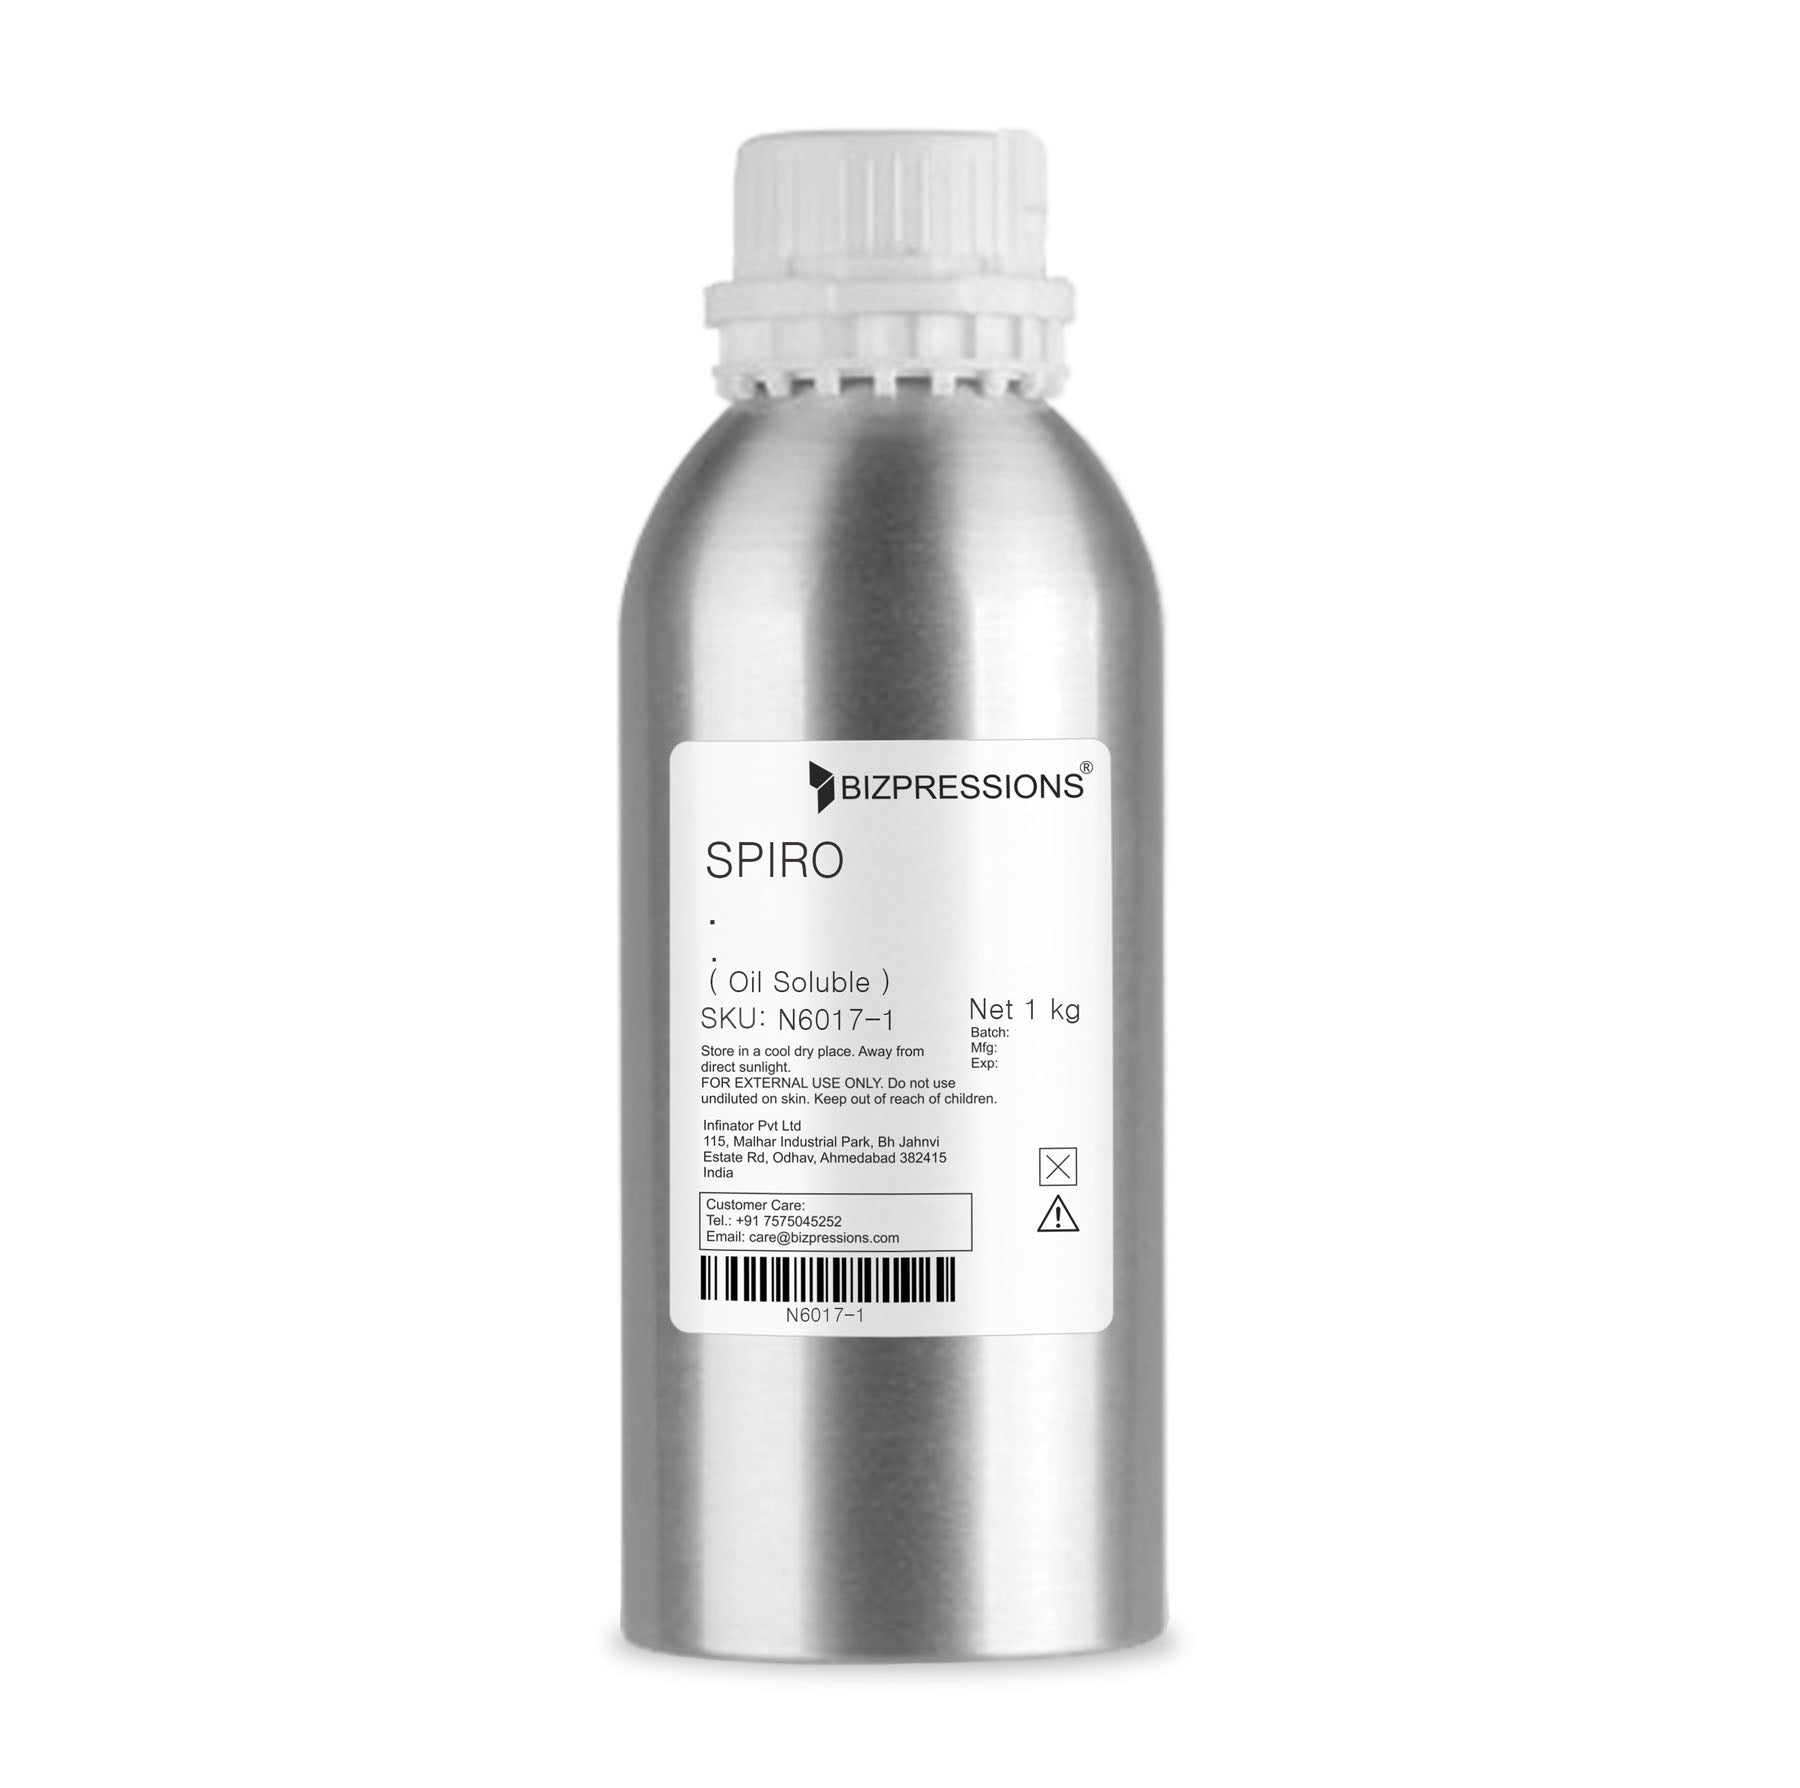 SPIRO - Fragrance ( Oil Soluble ) - 1 kg